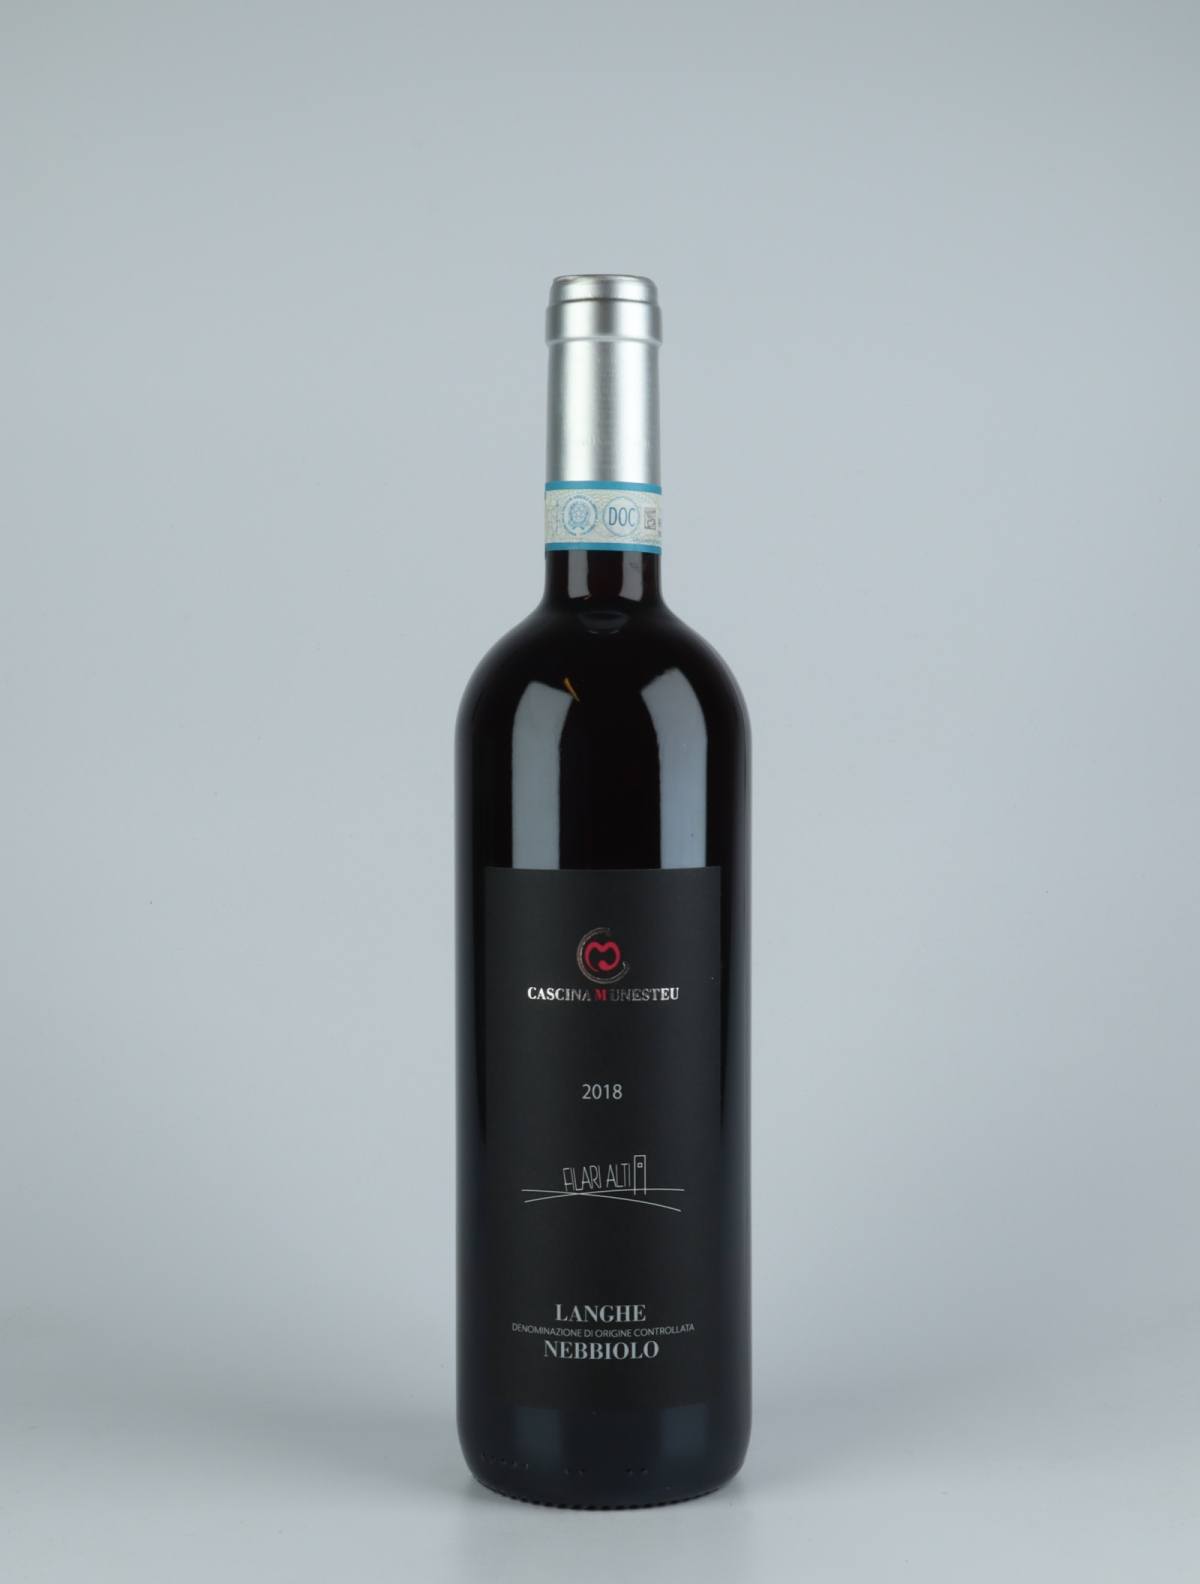 En flaske 2018 Langhe Nebbiolo - Filari Alti Rødvin fra Cascina Munesteu, Piemonte i Italien